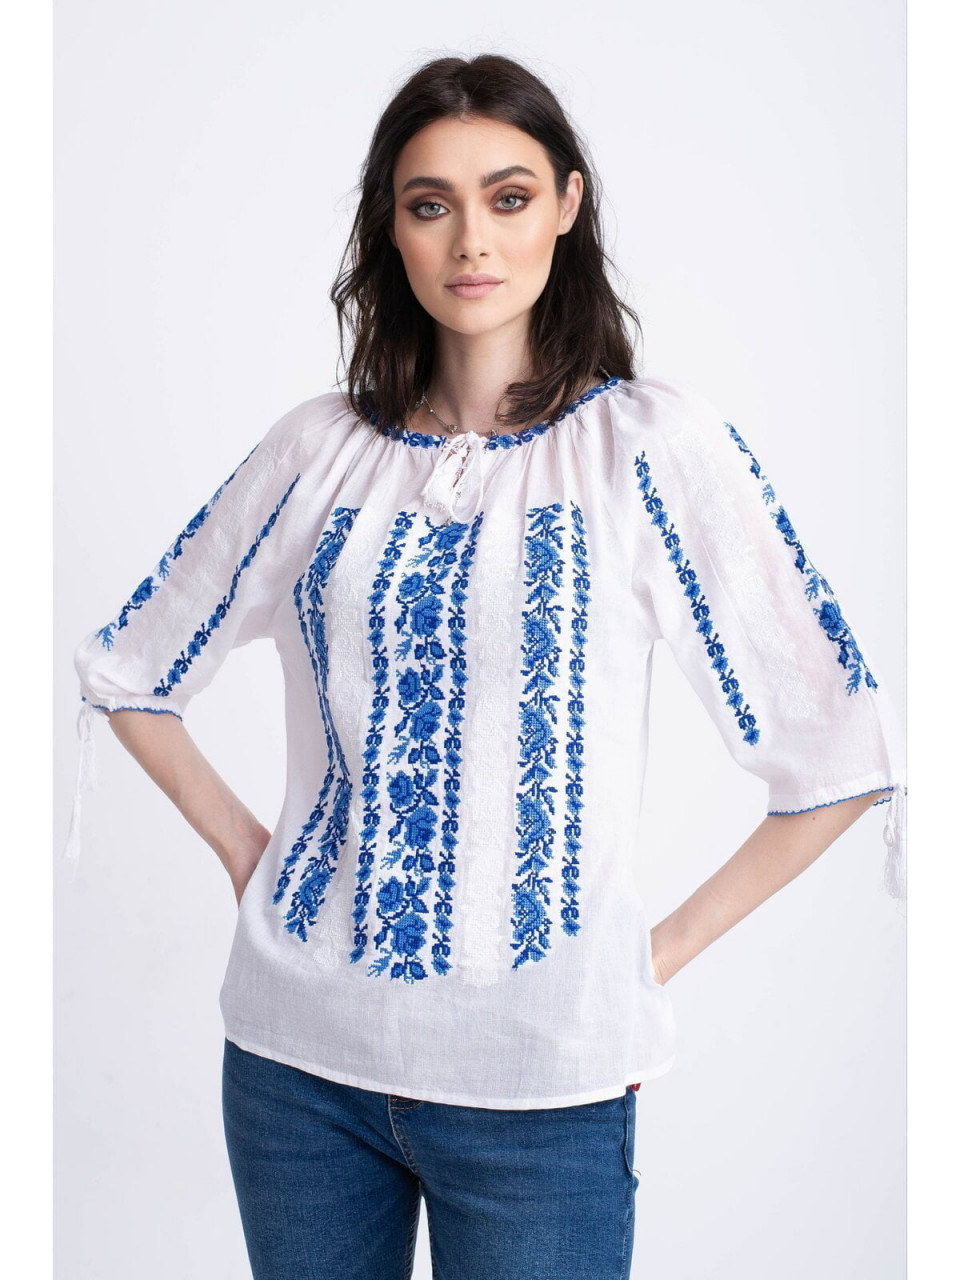 Bluza traditionala din bumbac alb cu broderie inflorata albastra pentru dama